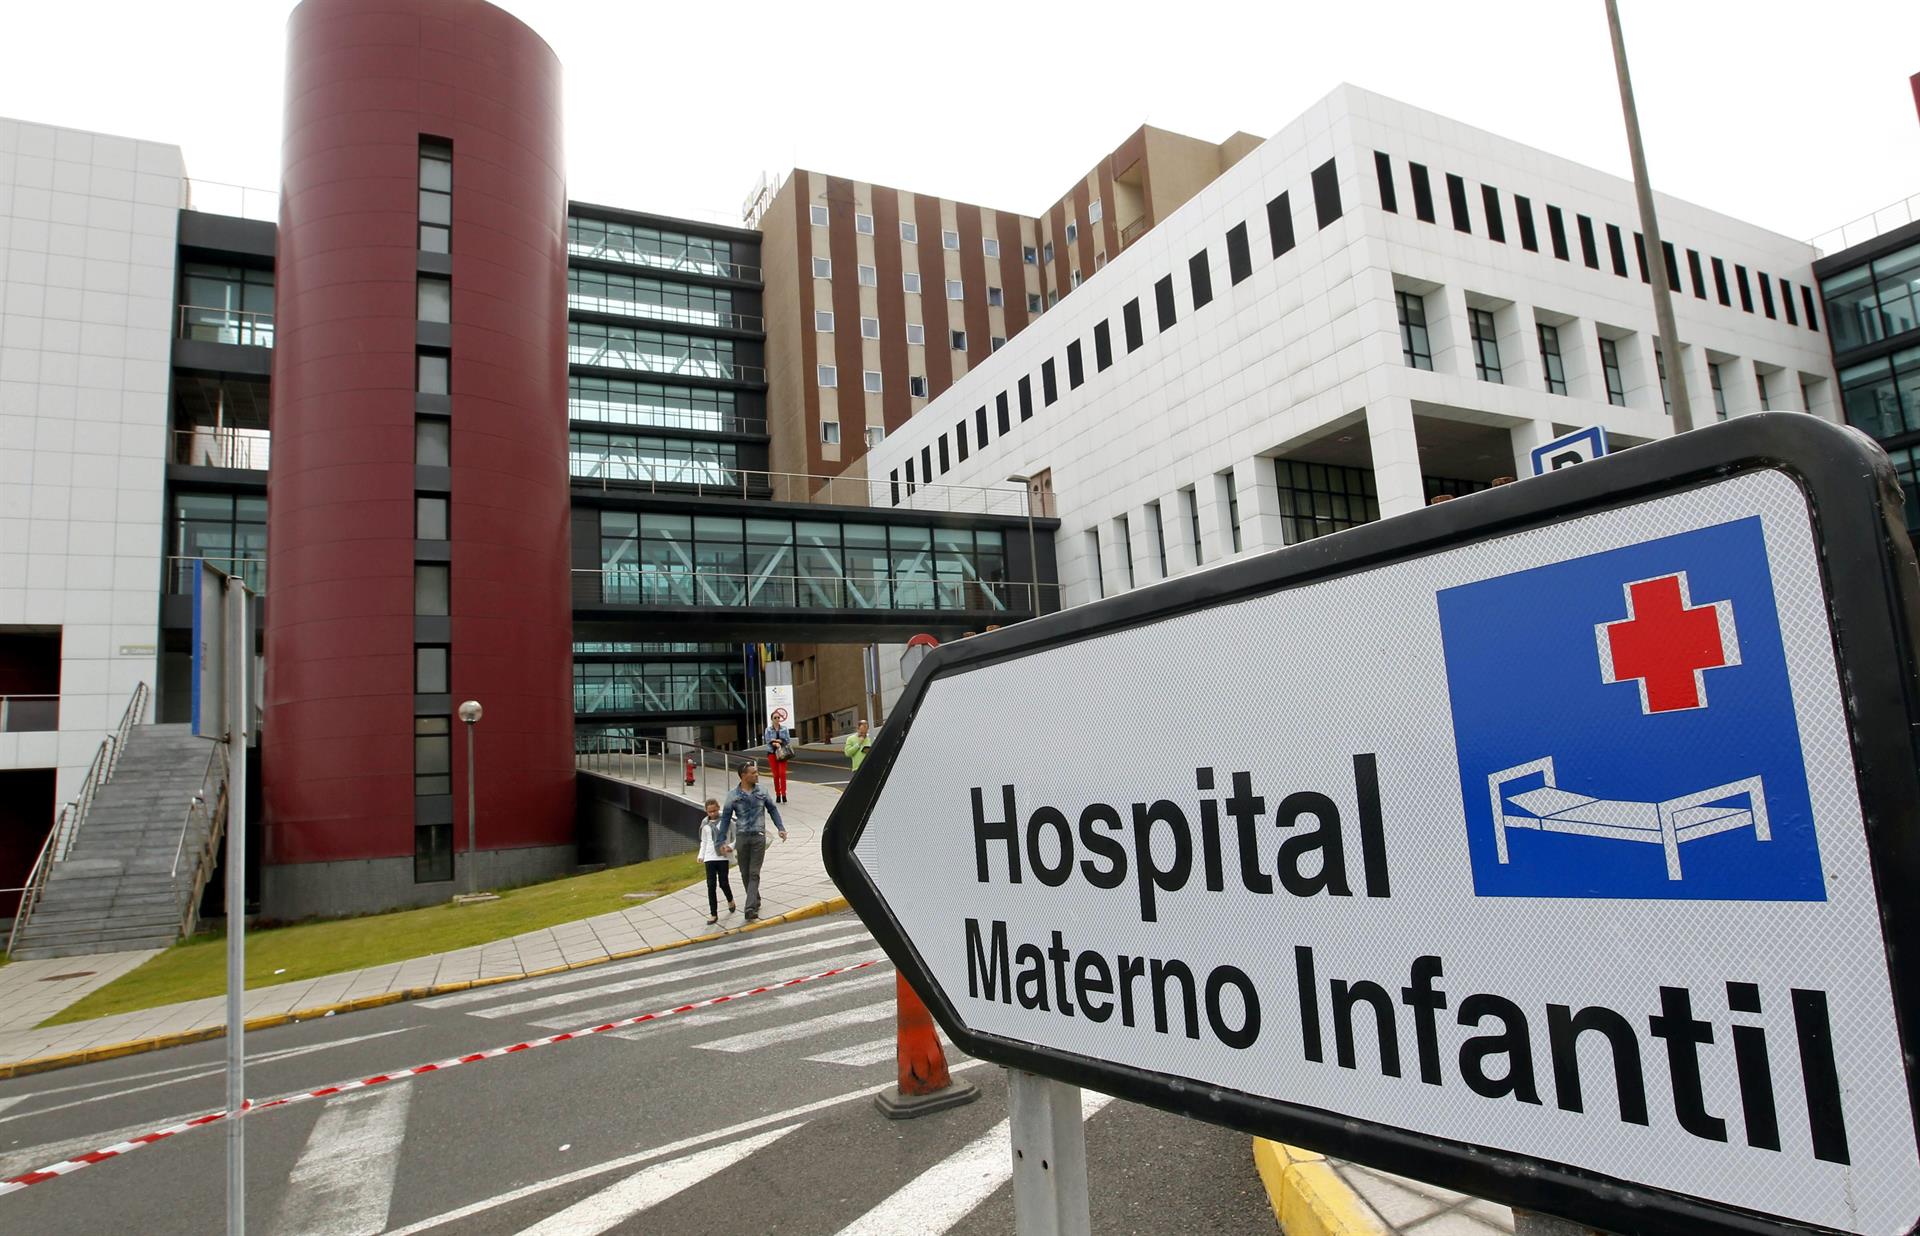 Foto de archivo del Hospital Materno Infantil de Las Palmas de Gran Canaria. EFE/Elvira Urquijo A.